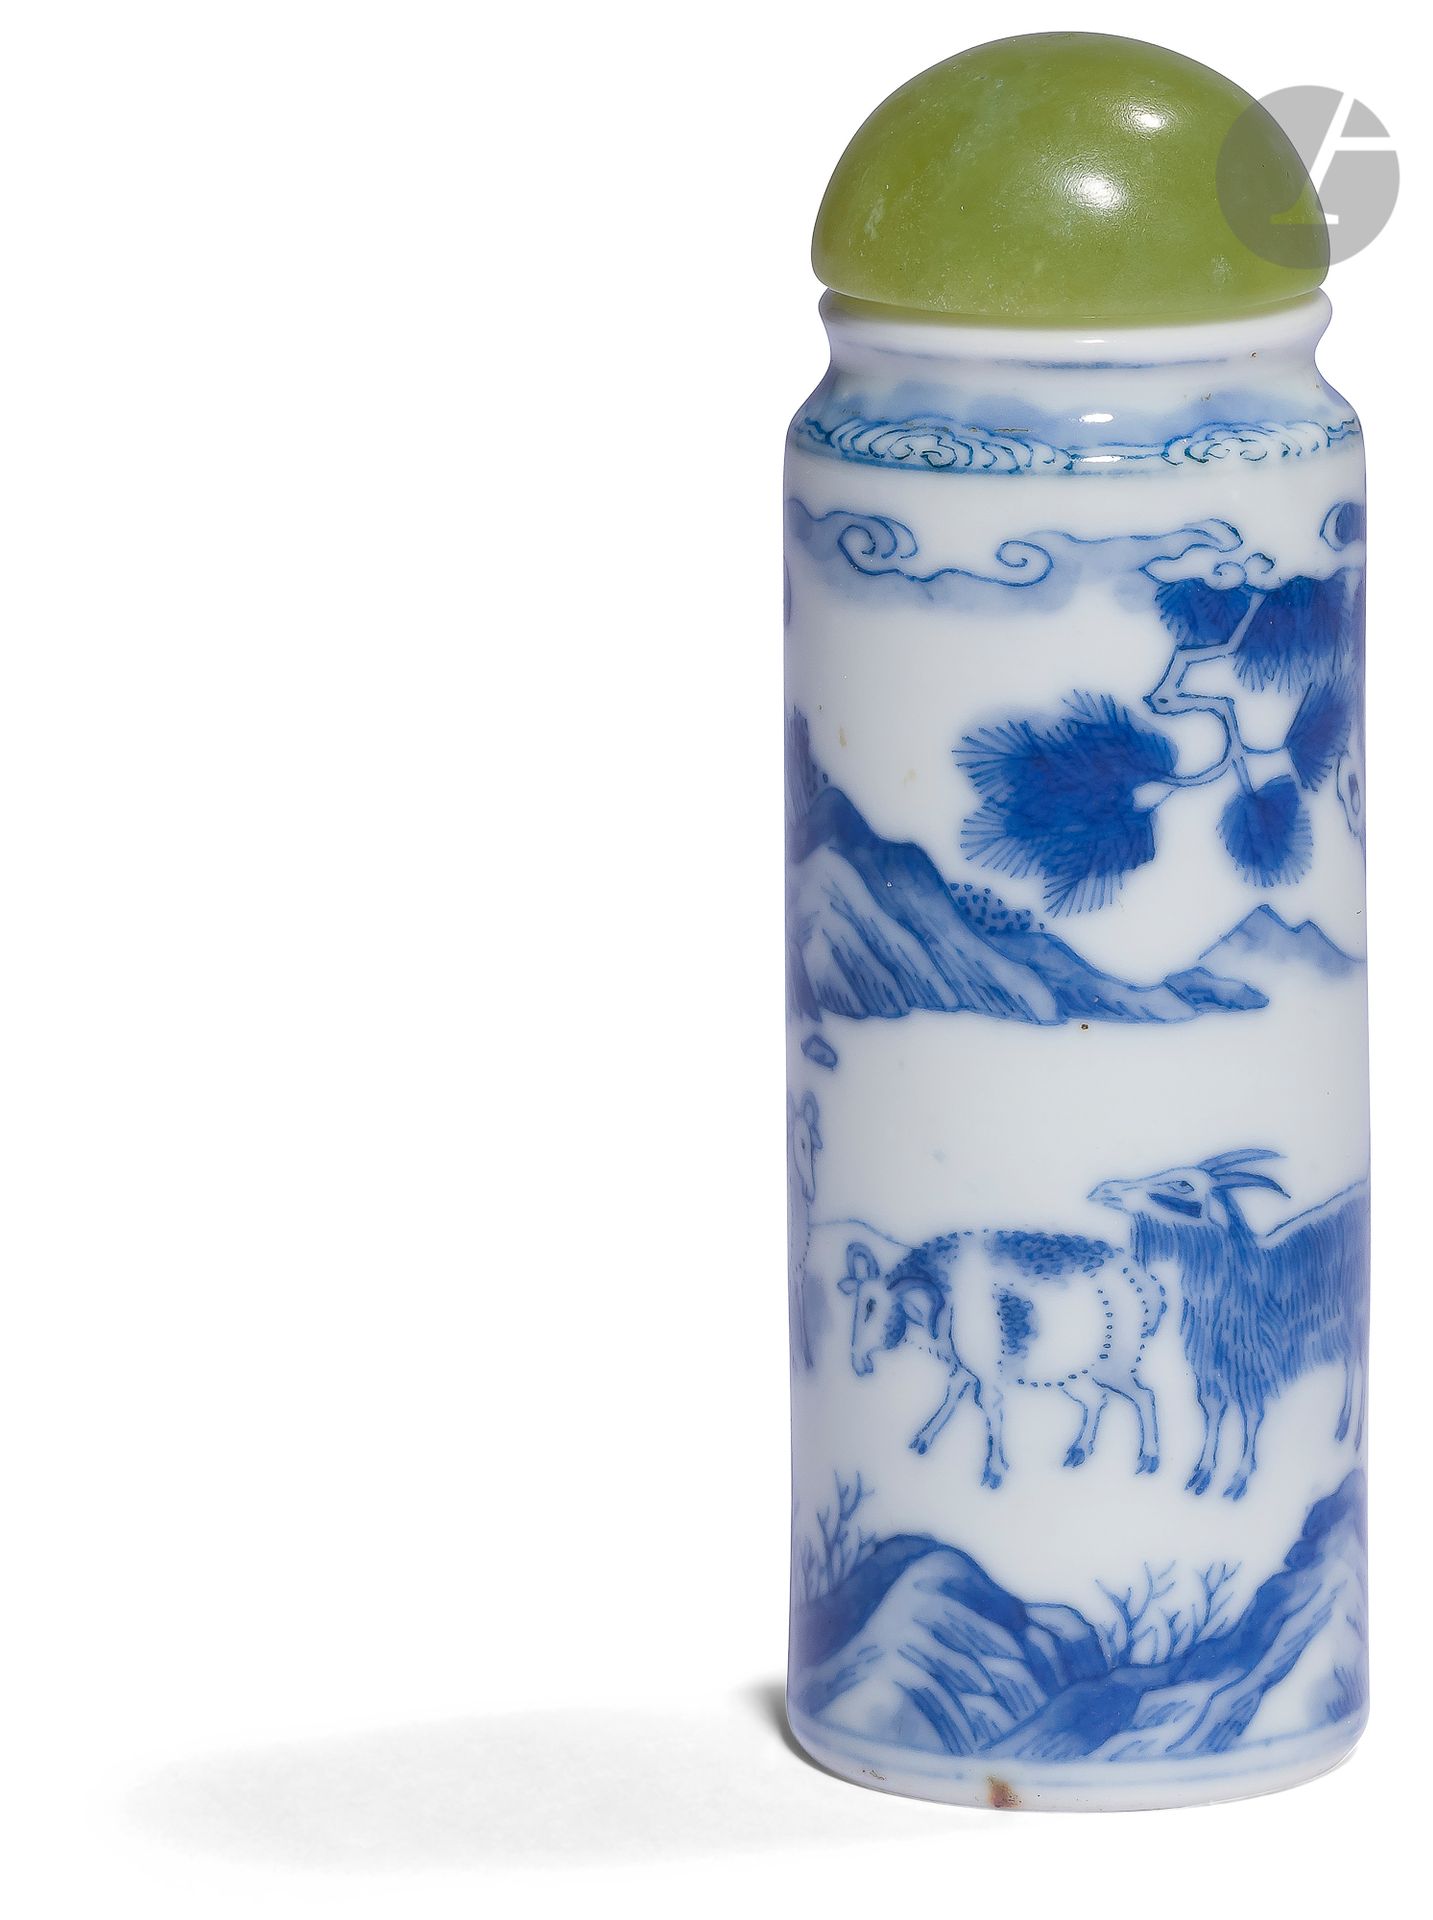 Null Tabatière en porcelaine bleu et blanc, Chine, XIXe siècle
Flacon de forme c&hellip;